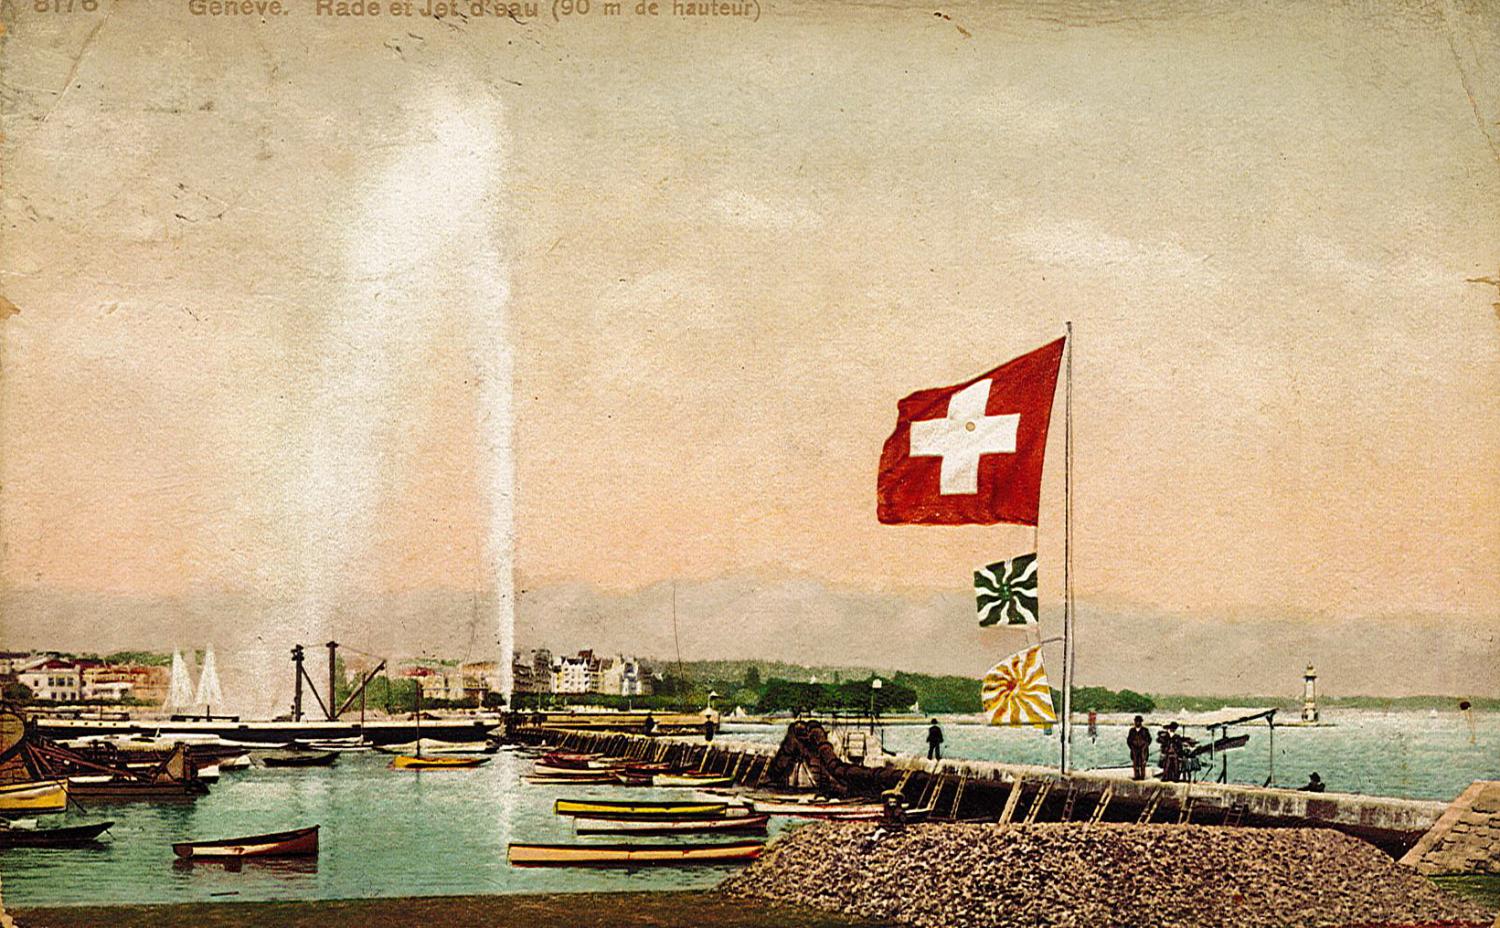 Genève - Rade et Jet d'eau (90 m de hauteur)